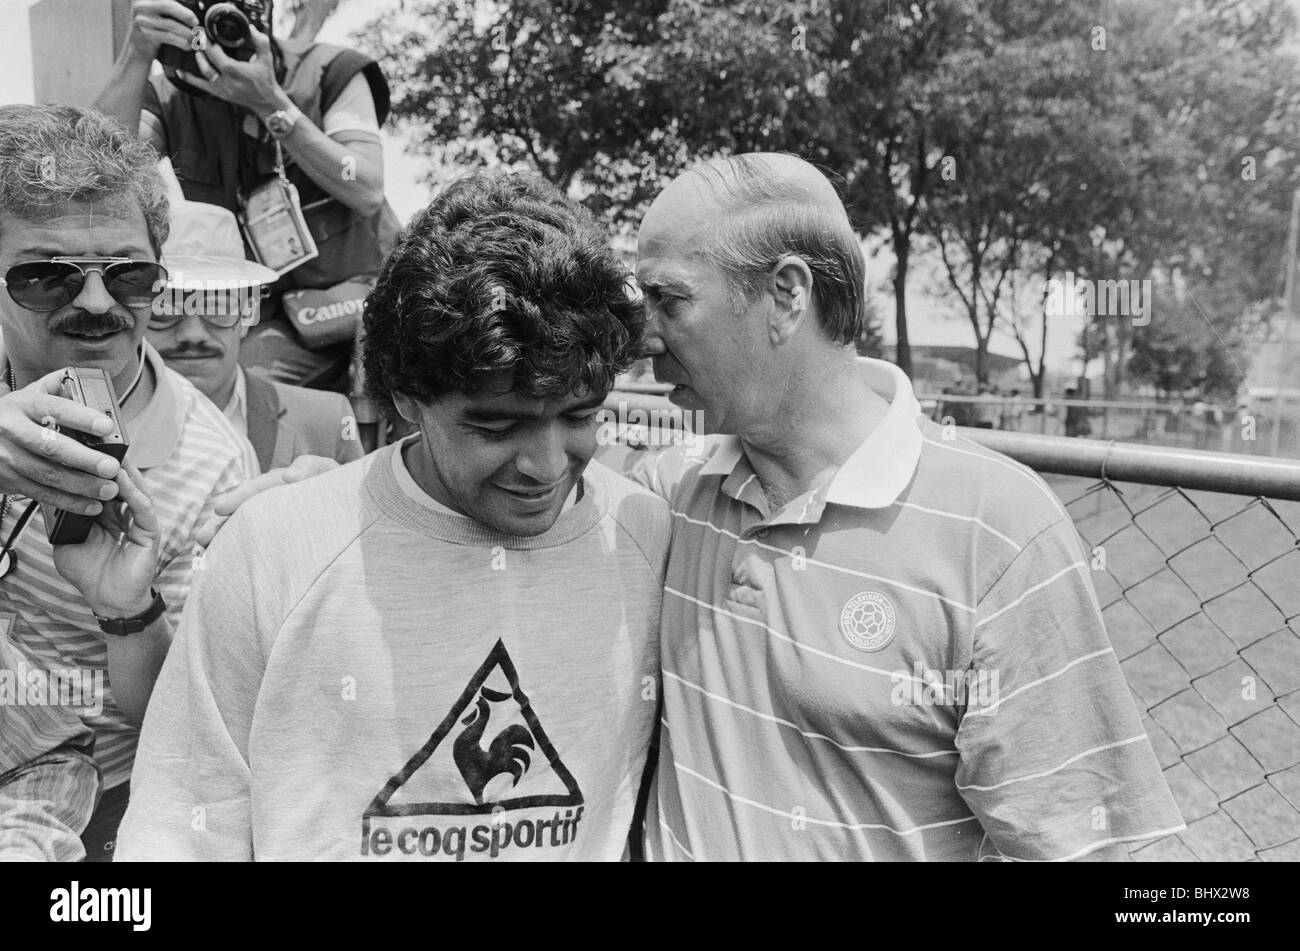 Finales de la Coupe du Monde 1986 au Mexique. Footballeur argentin Diego Maradona parle à l'ex-footballeur Bobby Charlton en Angleterre au cours d'une session de formation. Juin 1986. Banque D'Images